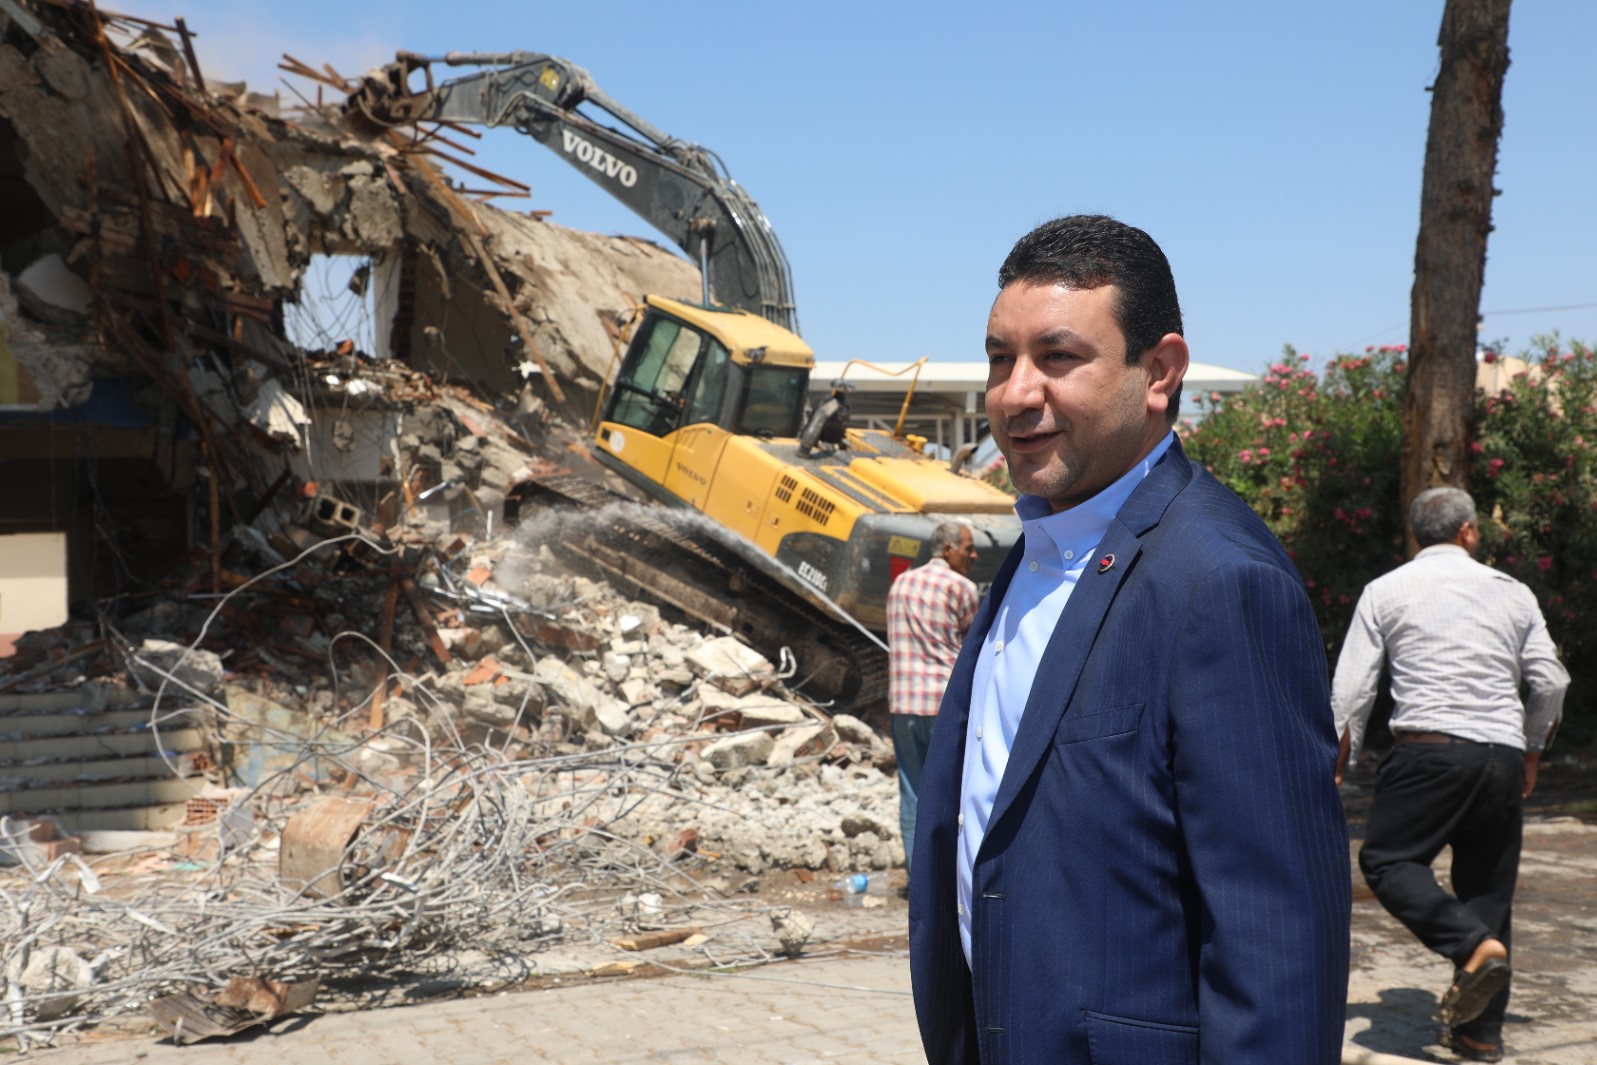  Harran Belediye Başkanı Özyavuz, Eski ilçe Tarım Müdürlüğü Binasının Yıkımını Başlattı